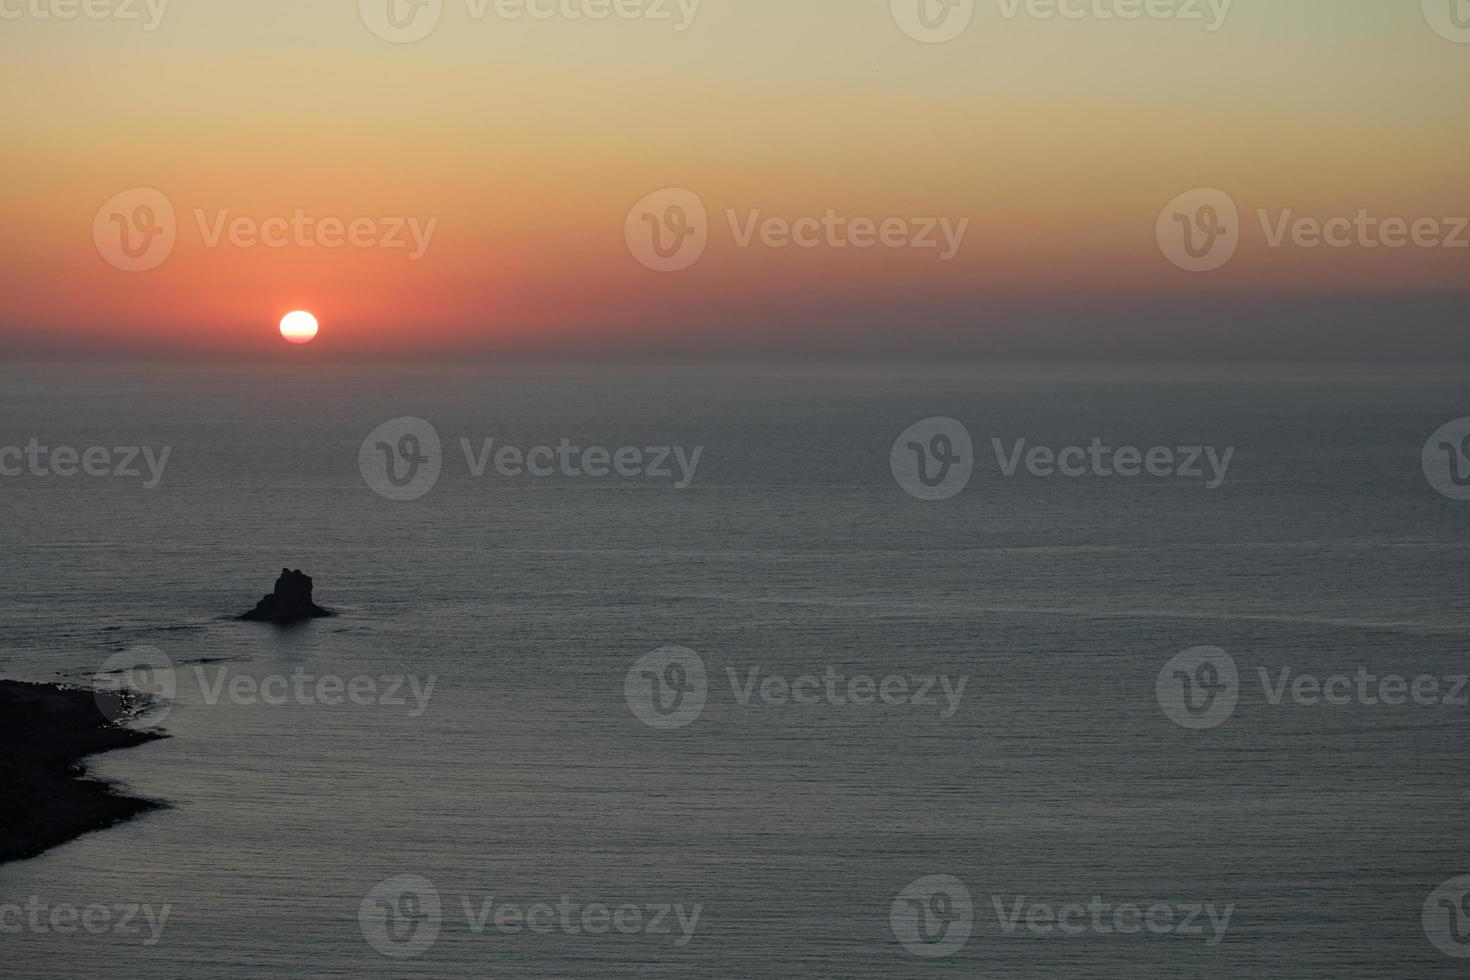 playa de balos laguna del sol isla de creta verano 2020 covid-19 vacaciones foto